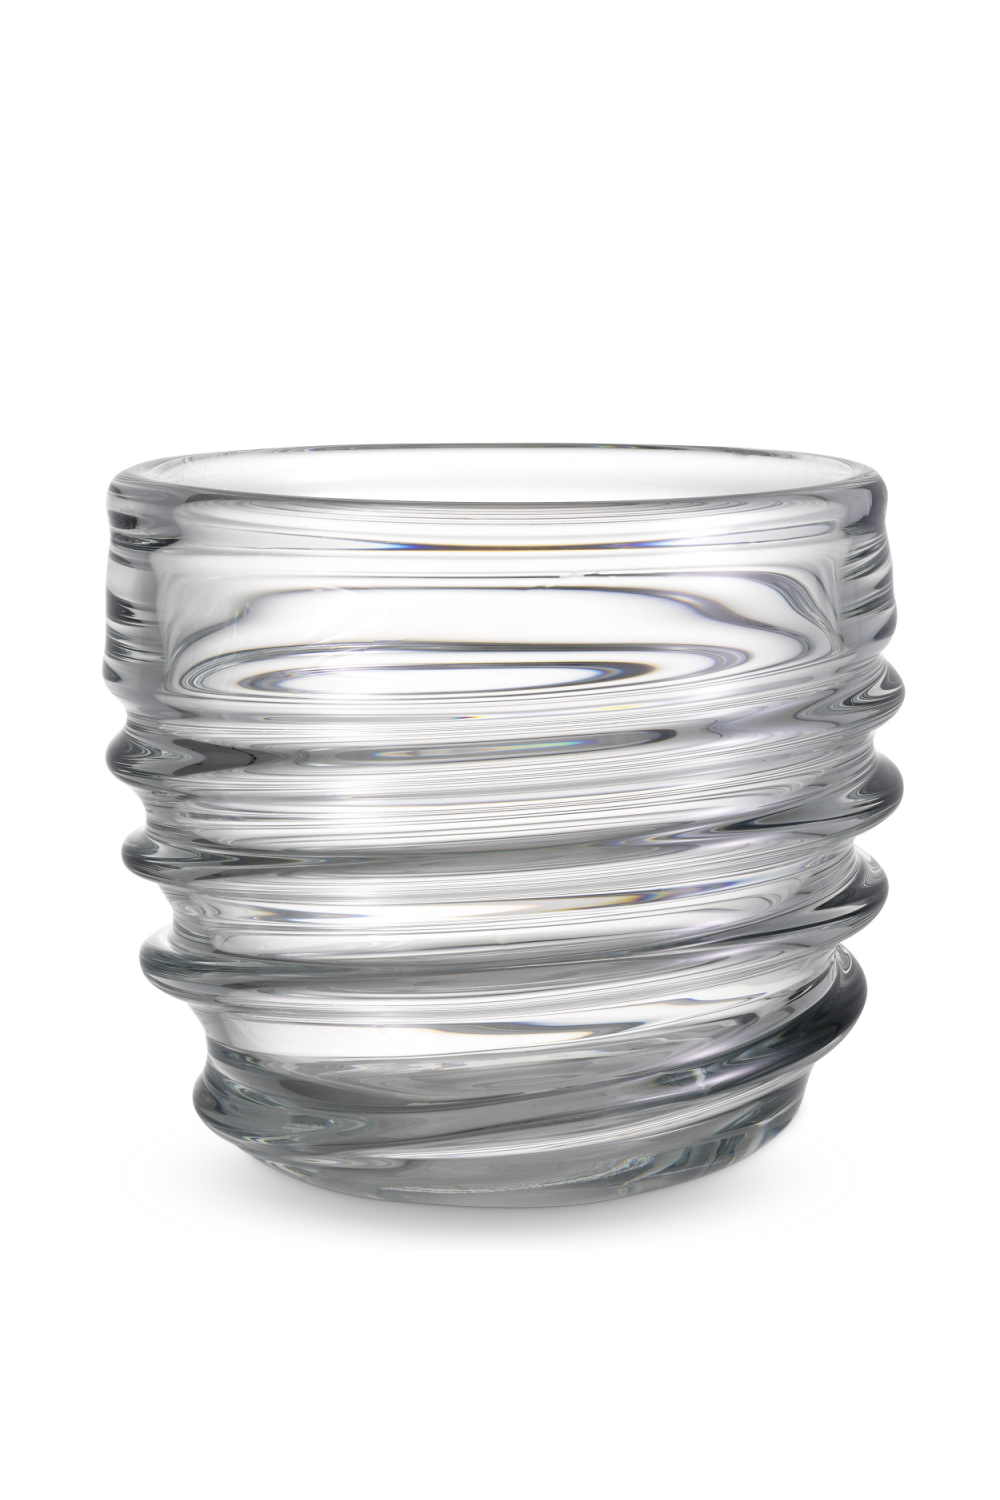 Contemporary Clear Glass Vase | Eichholtz Xalvador - S | OROA